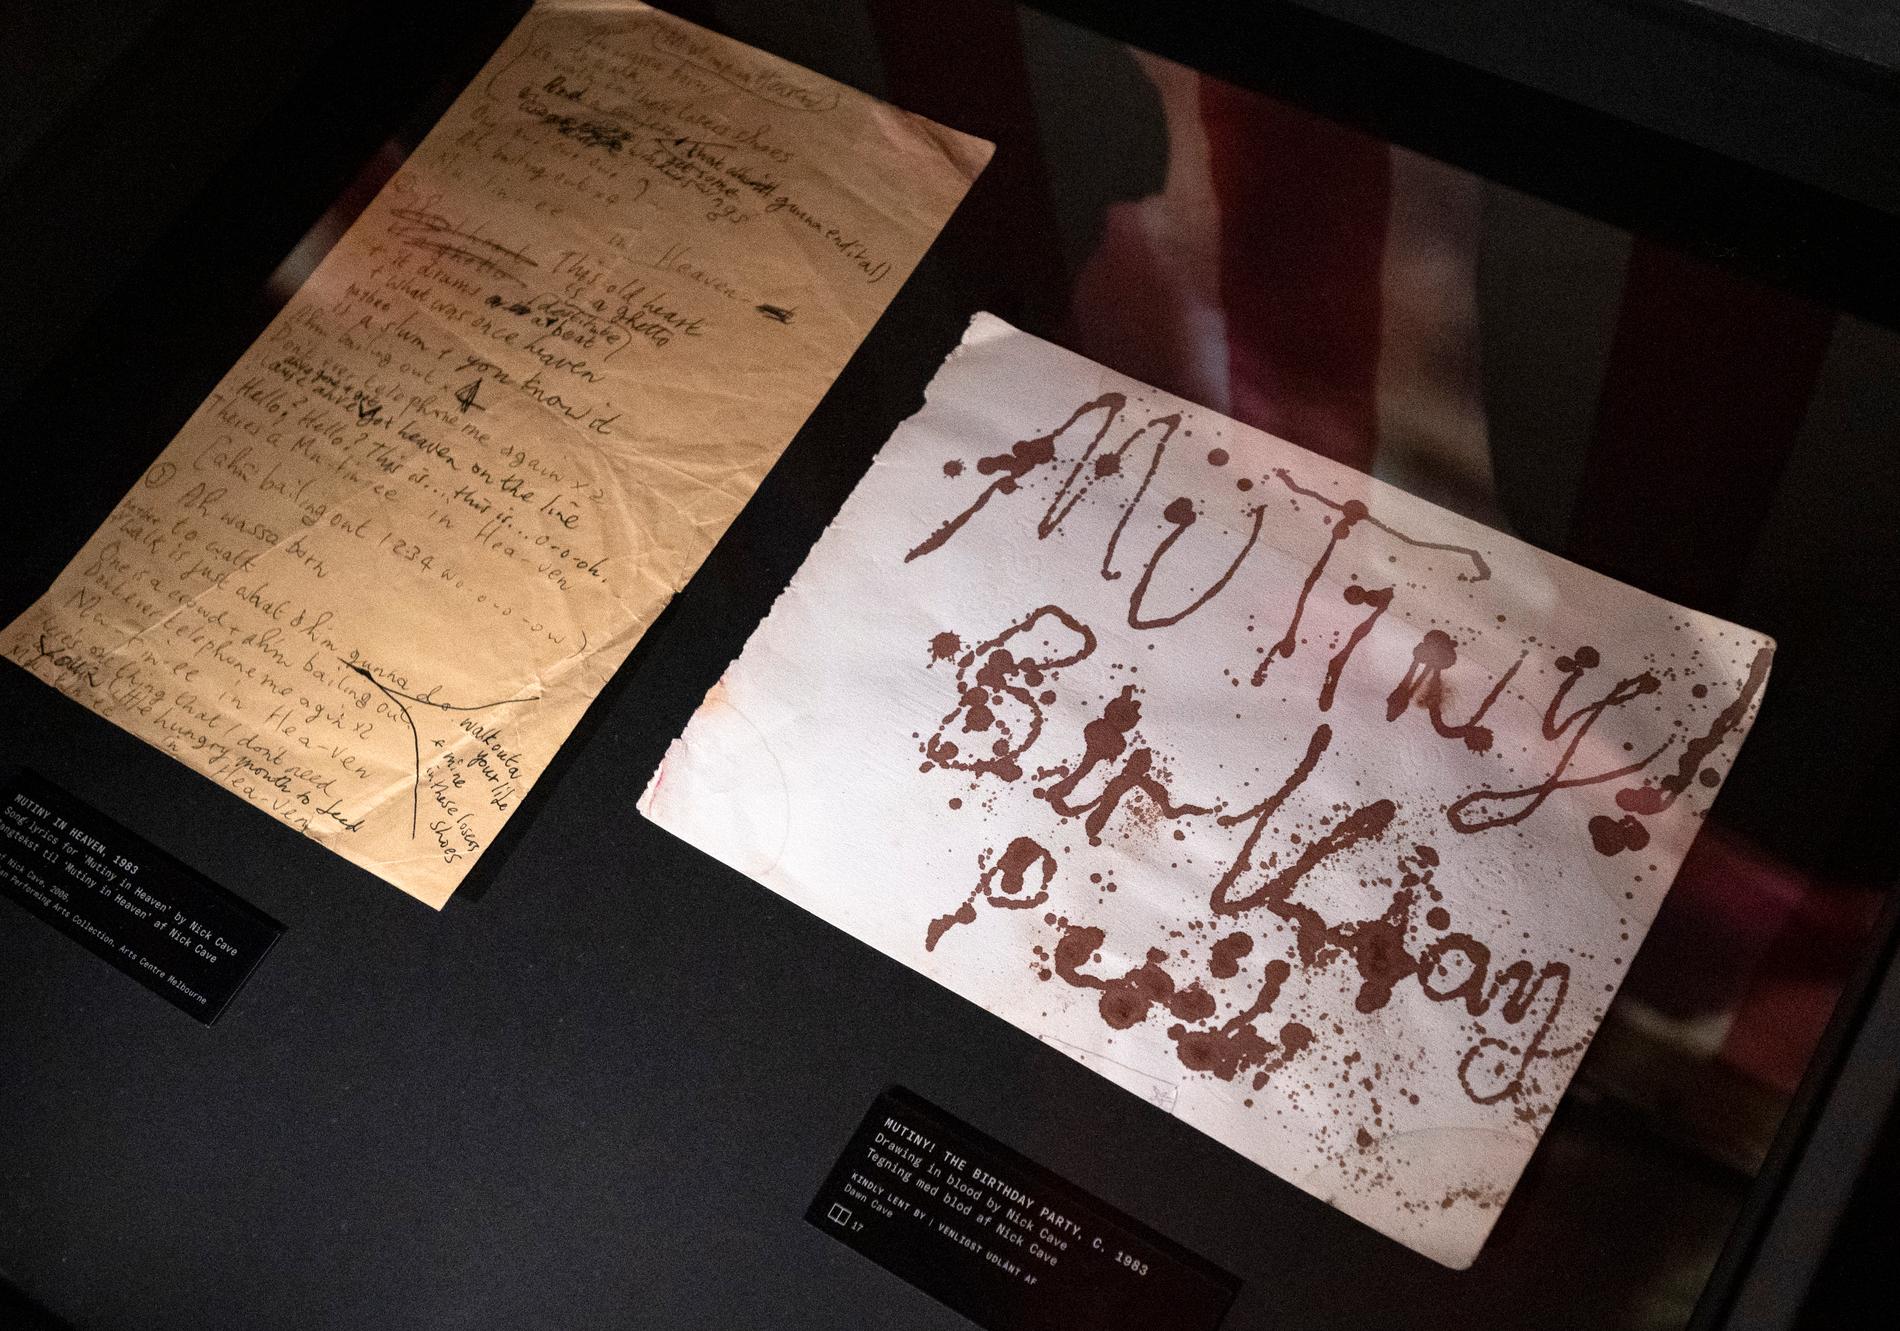 På utställningen "Stranger than kindness: The Nick Cave Exhibition" i Den Sorte Diamant får man bland mycket annat se en målning av Nick Cave gjord i hans eget blod.